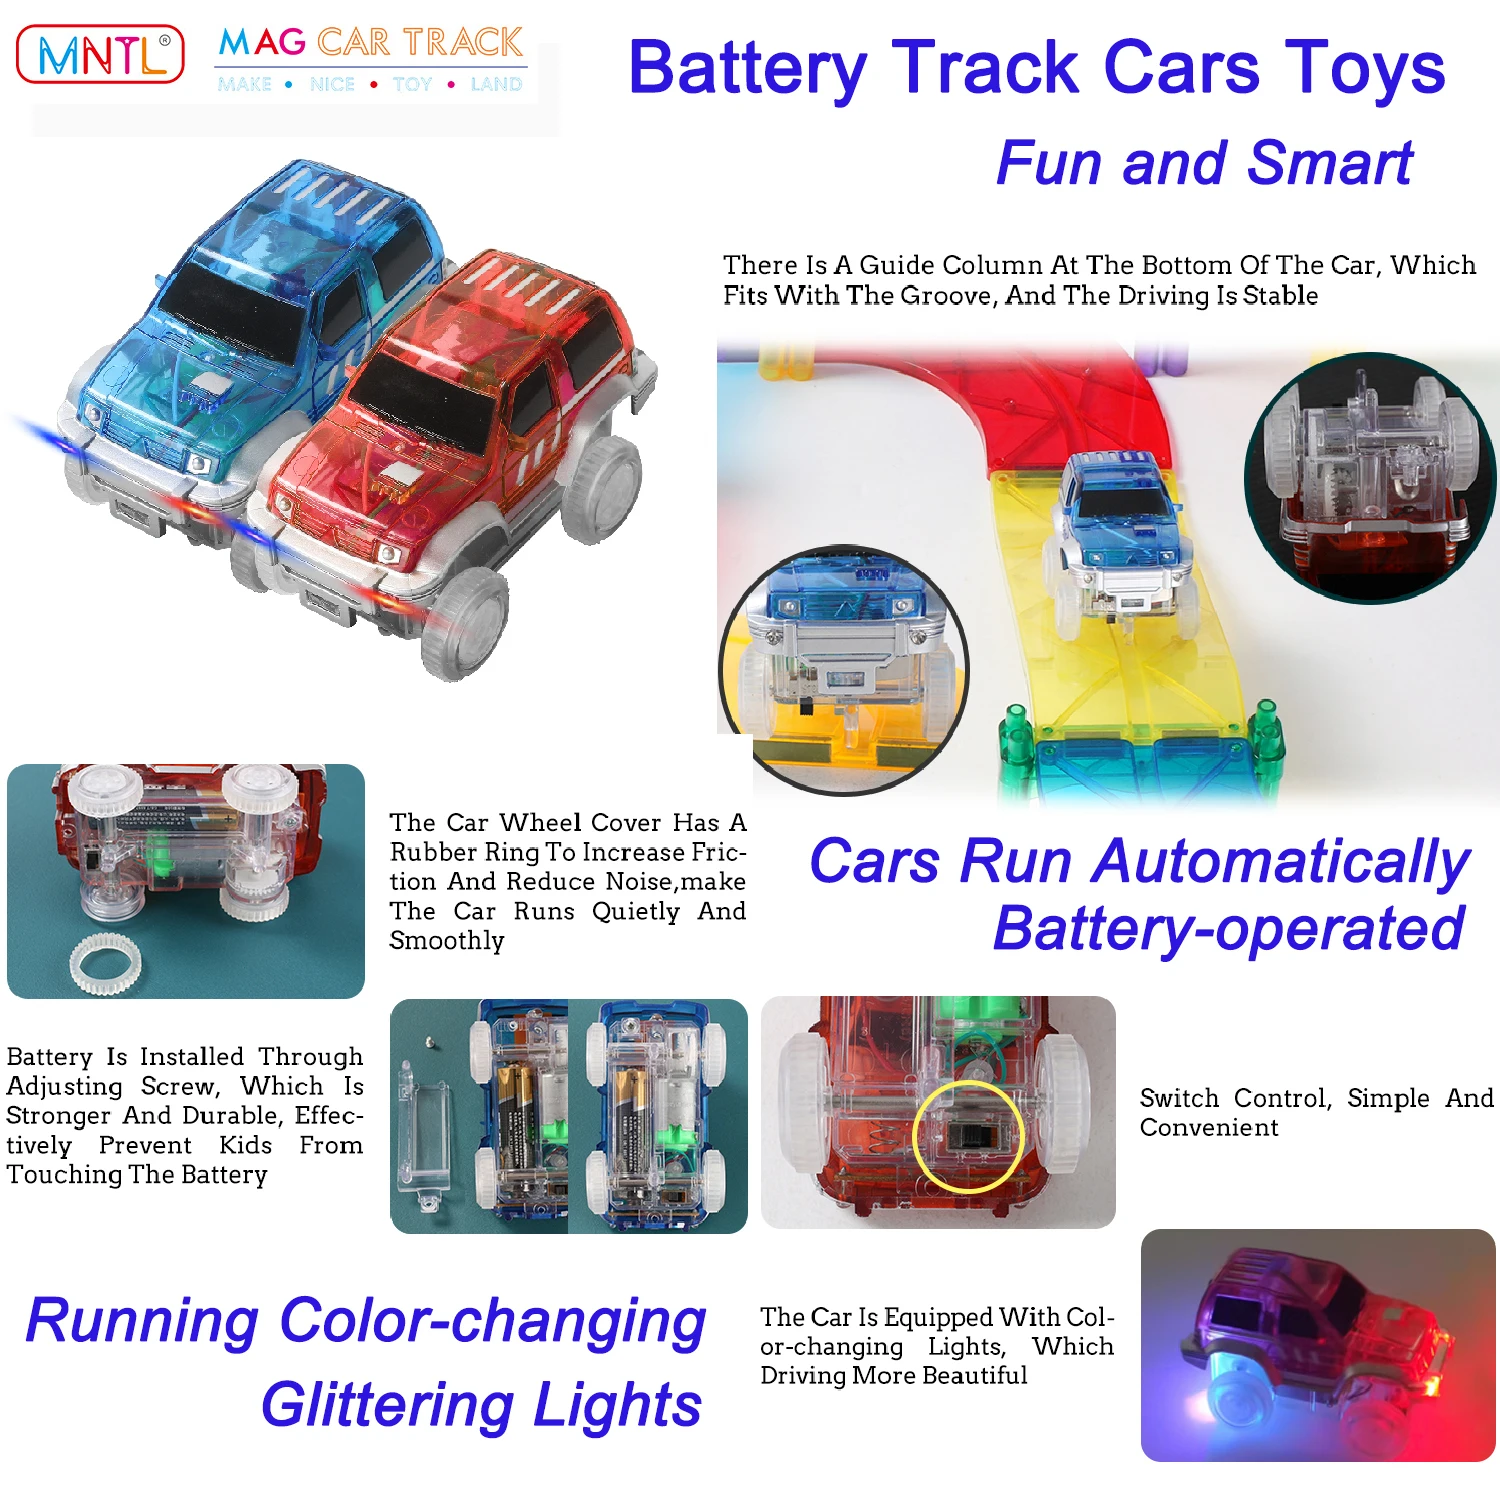 Brinquedos para meninos de 3 anos meninas - crianças meninos pista de  corrida carros aviões aventura com 4 carros, brinquedos pré-escolares para